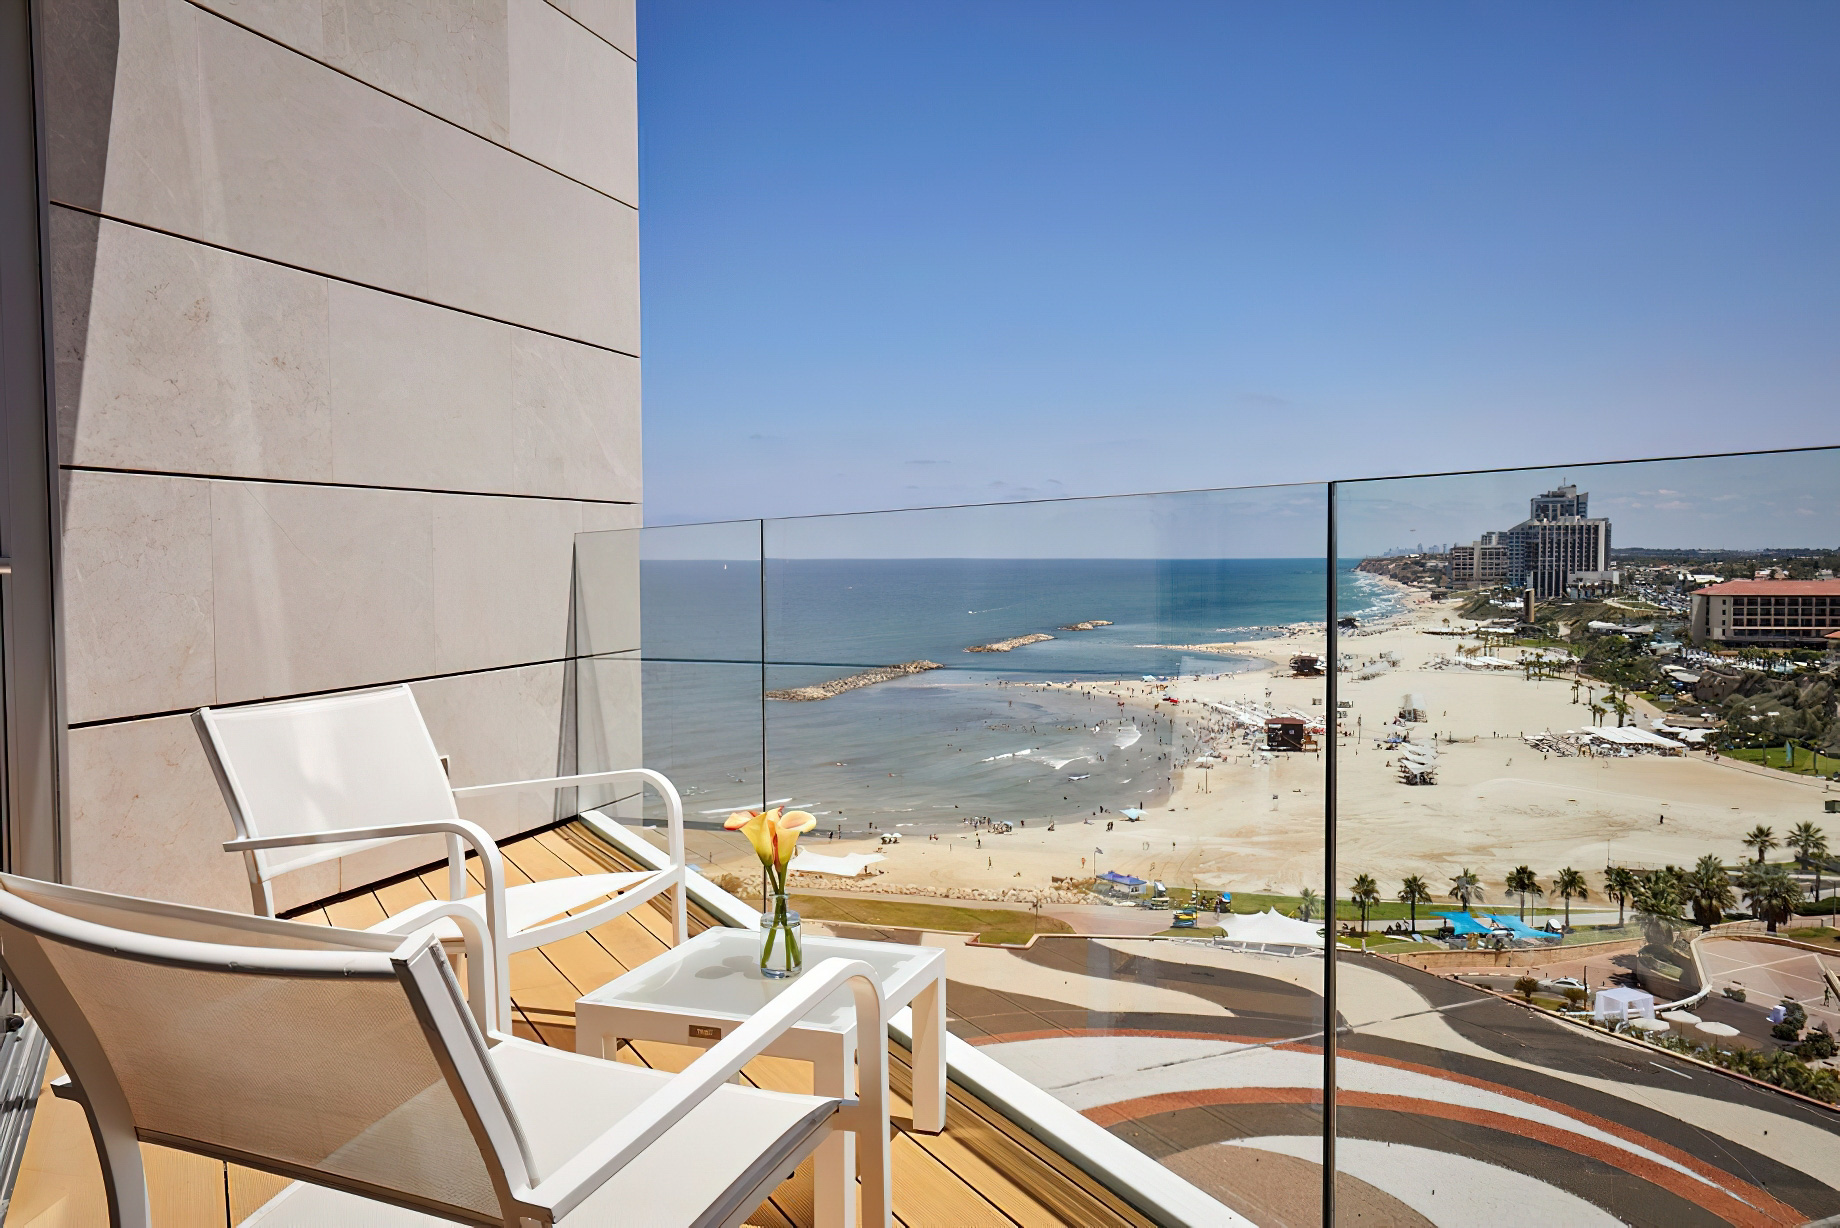 The Ritz-Carlton, Herzliya Hotel – Herzliya, Israel – Studio Room Balcony